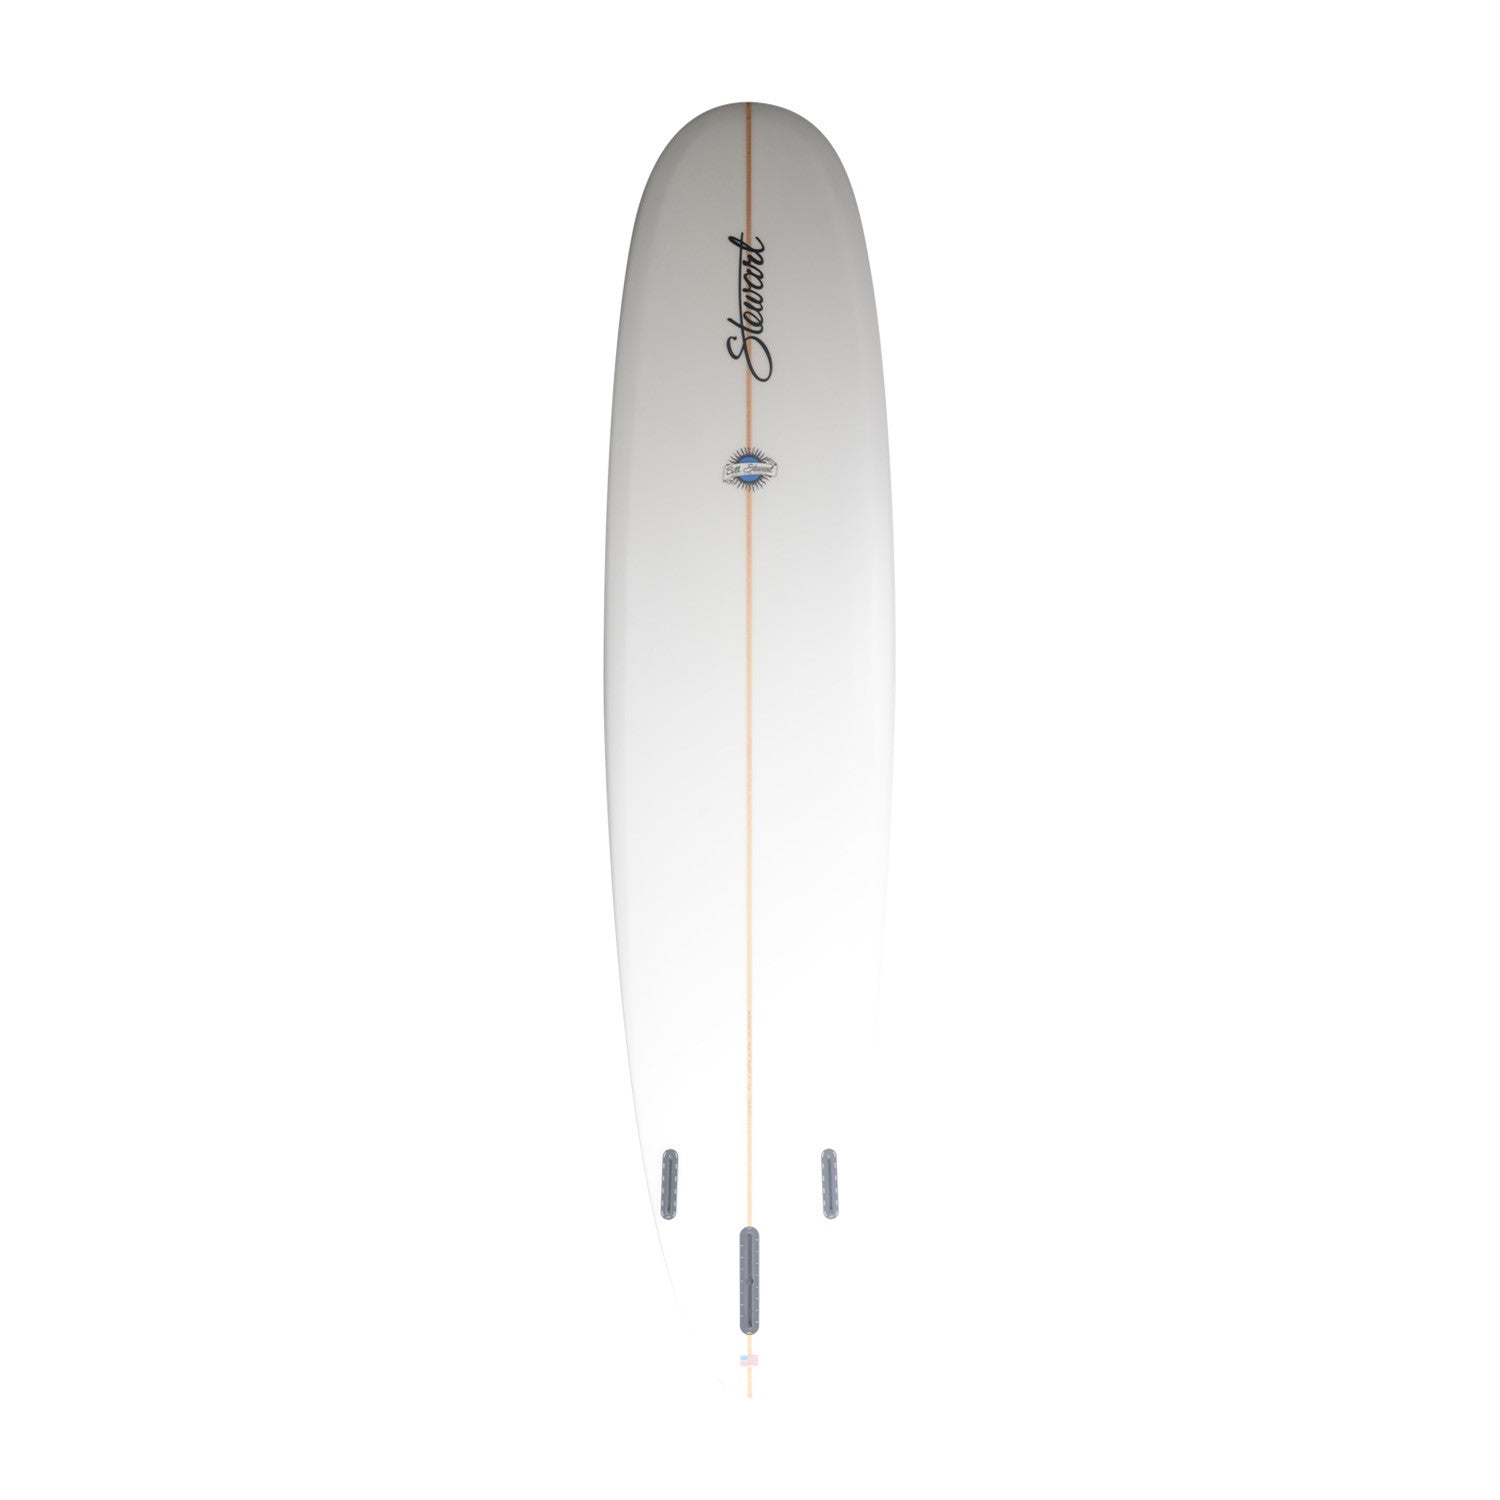 STEWART Surfboards - Redline 9'0 (PU) - Clear